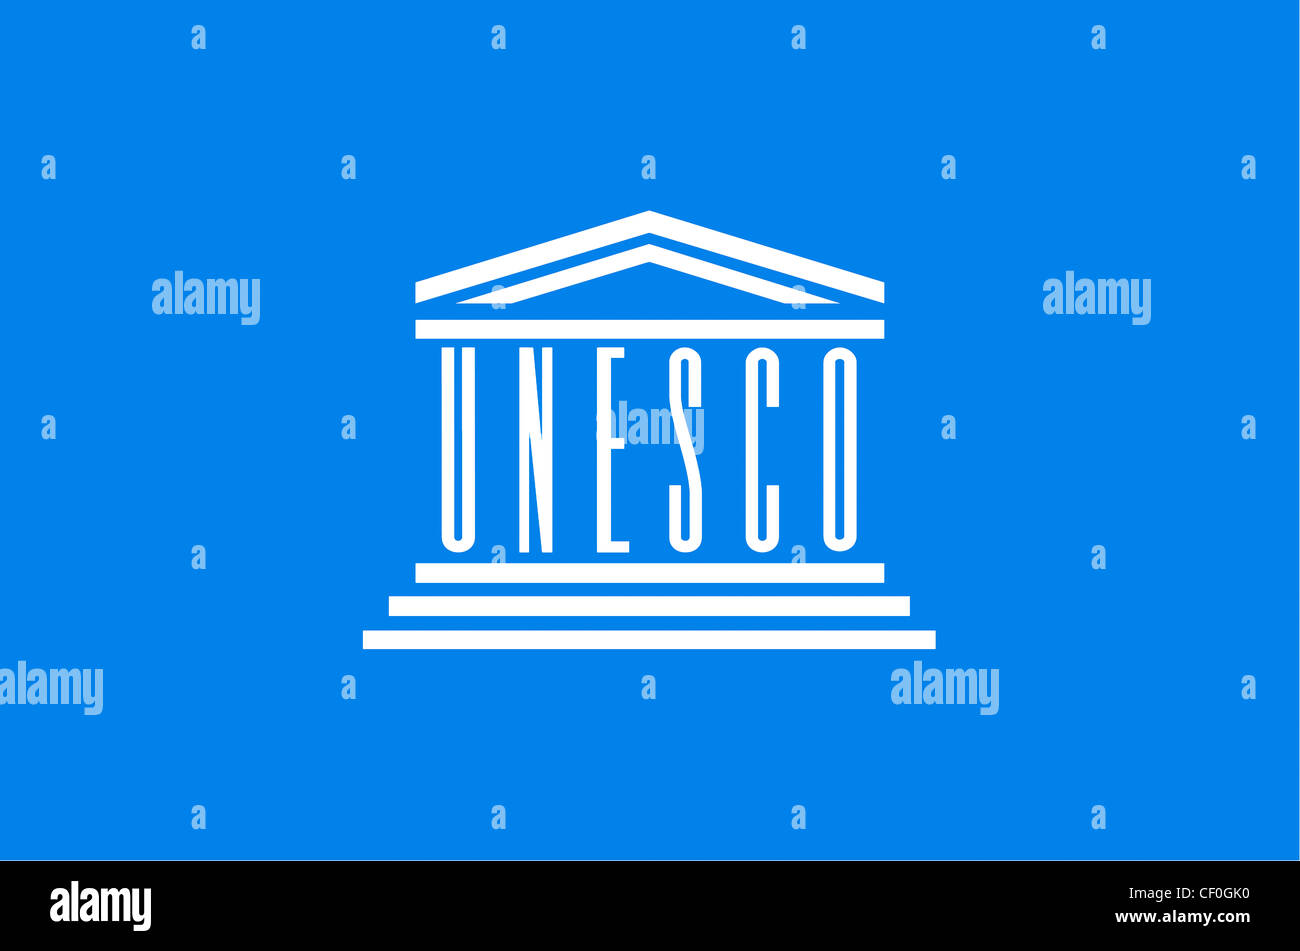 La bandera con el logotipo de la Organización de las Naciones Unidas para la educación, la ciencia y la Cultura (UNESCO), con sede en París. Foto de stock